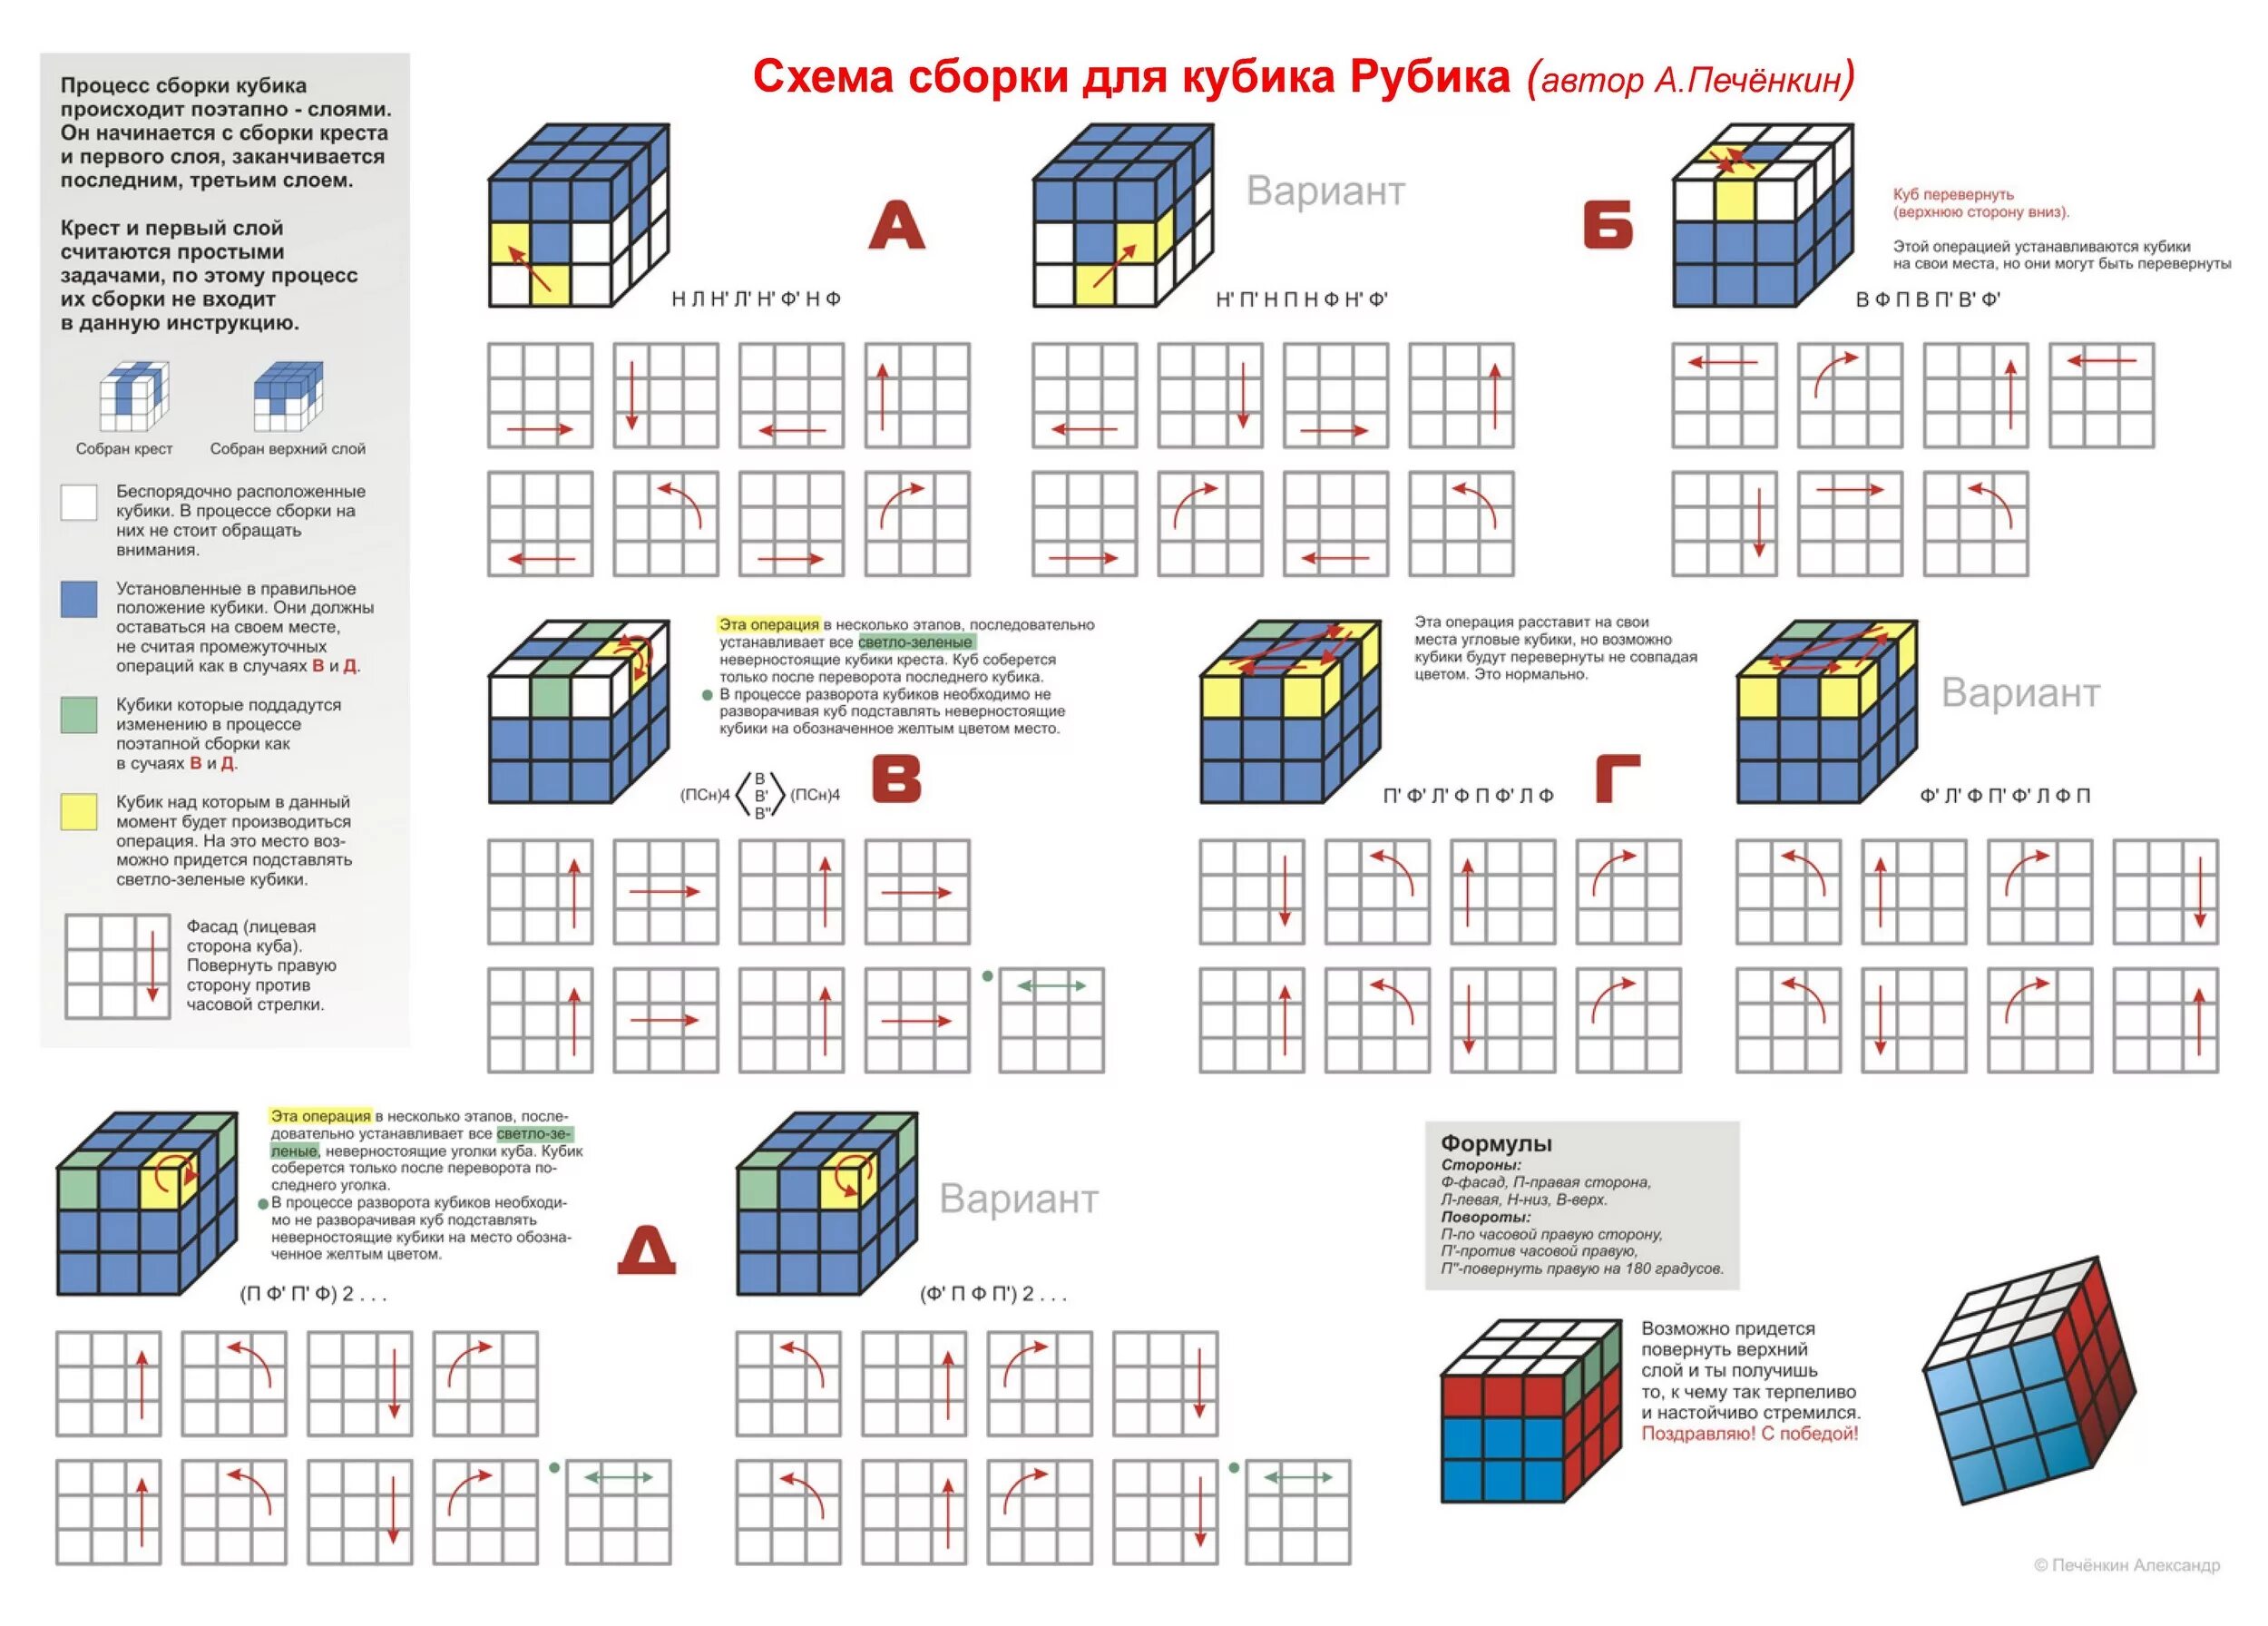 Пошаговая сборка кубика. Схема собирания кубика Рубика 3х3 для начинающих. Формула кубика Рубика 3x3. Схема сборки кубика Рубика 3х3. Схема складывания кубика Рубика 3х3.